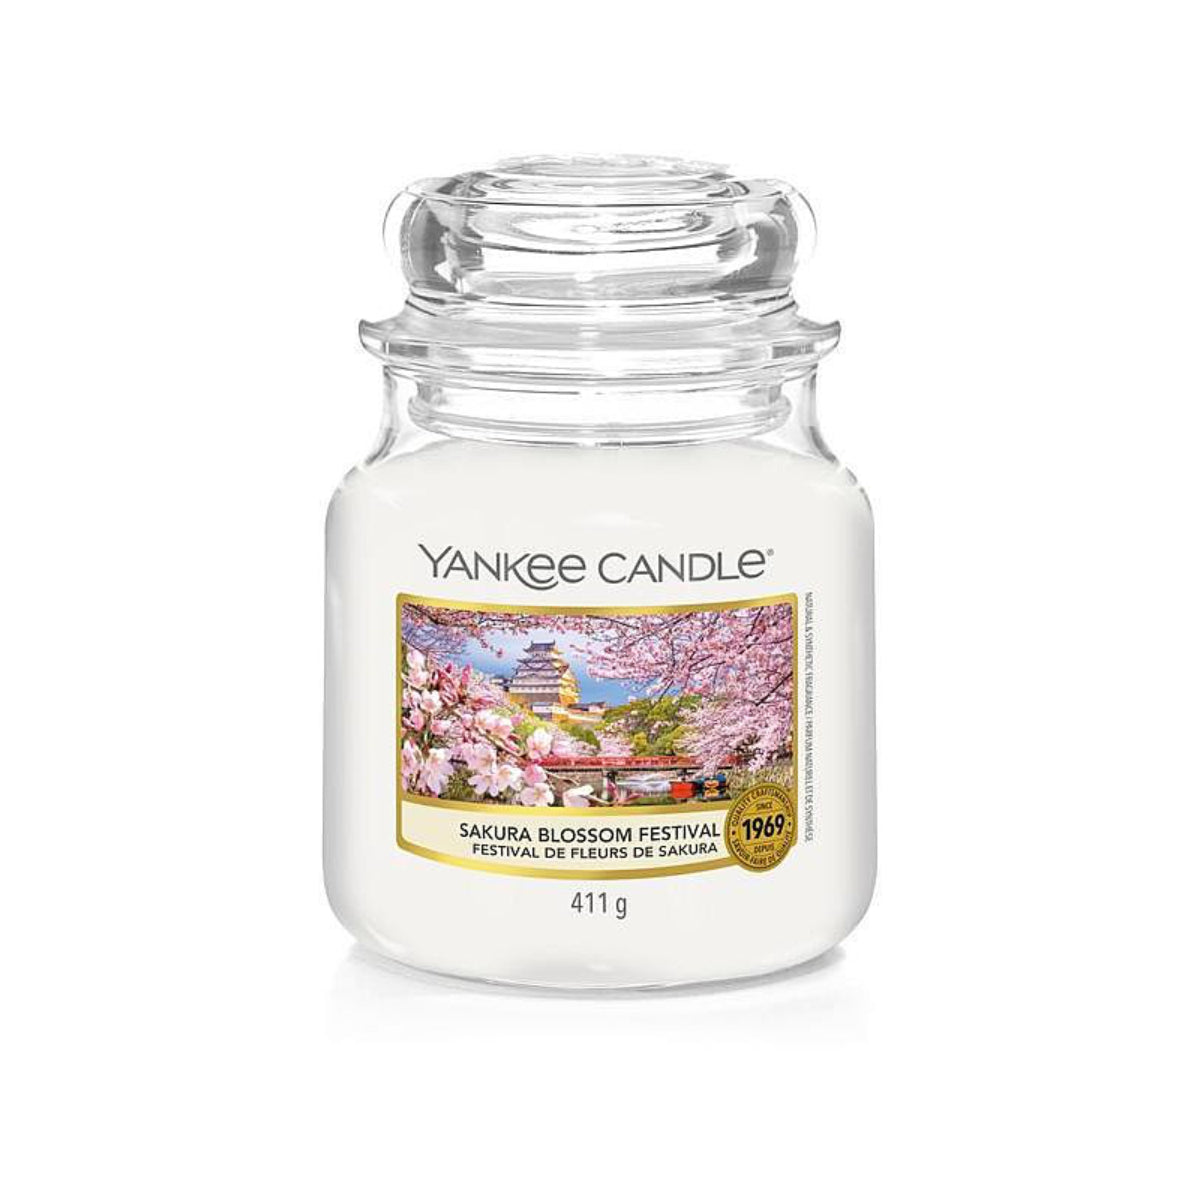 Candle Sakura Blossom Festival Yankee Candle – Magia do Lar